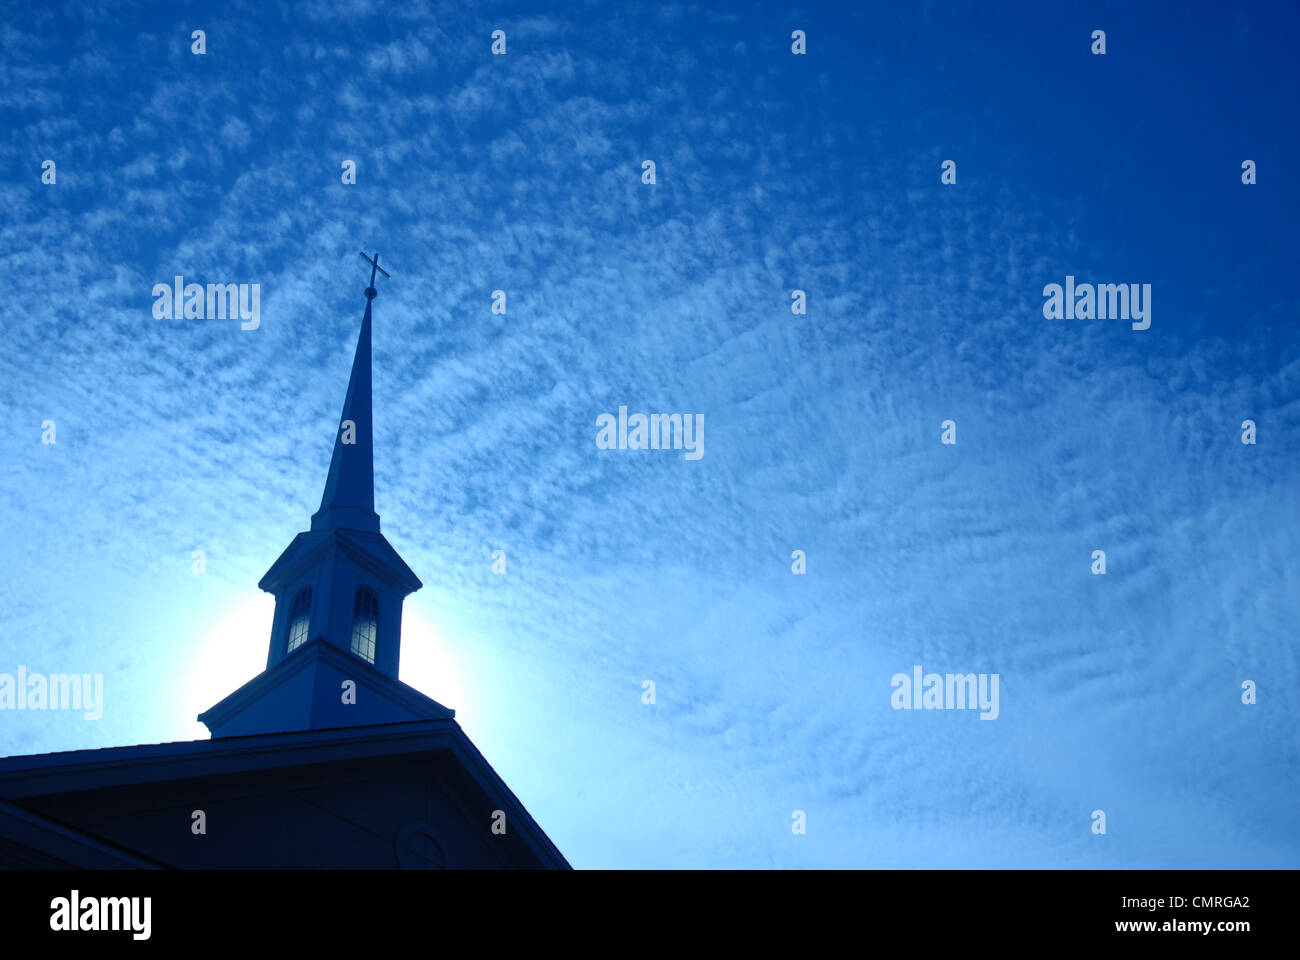 Church steeple against a sunrise sky. Stock Photo